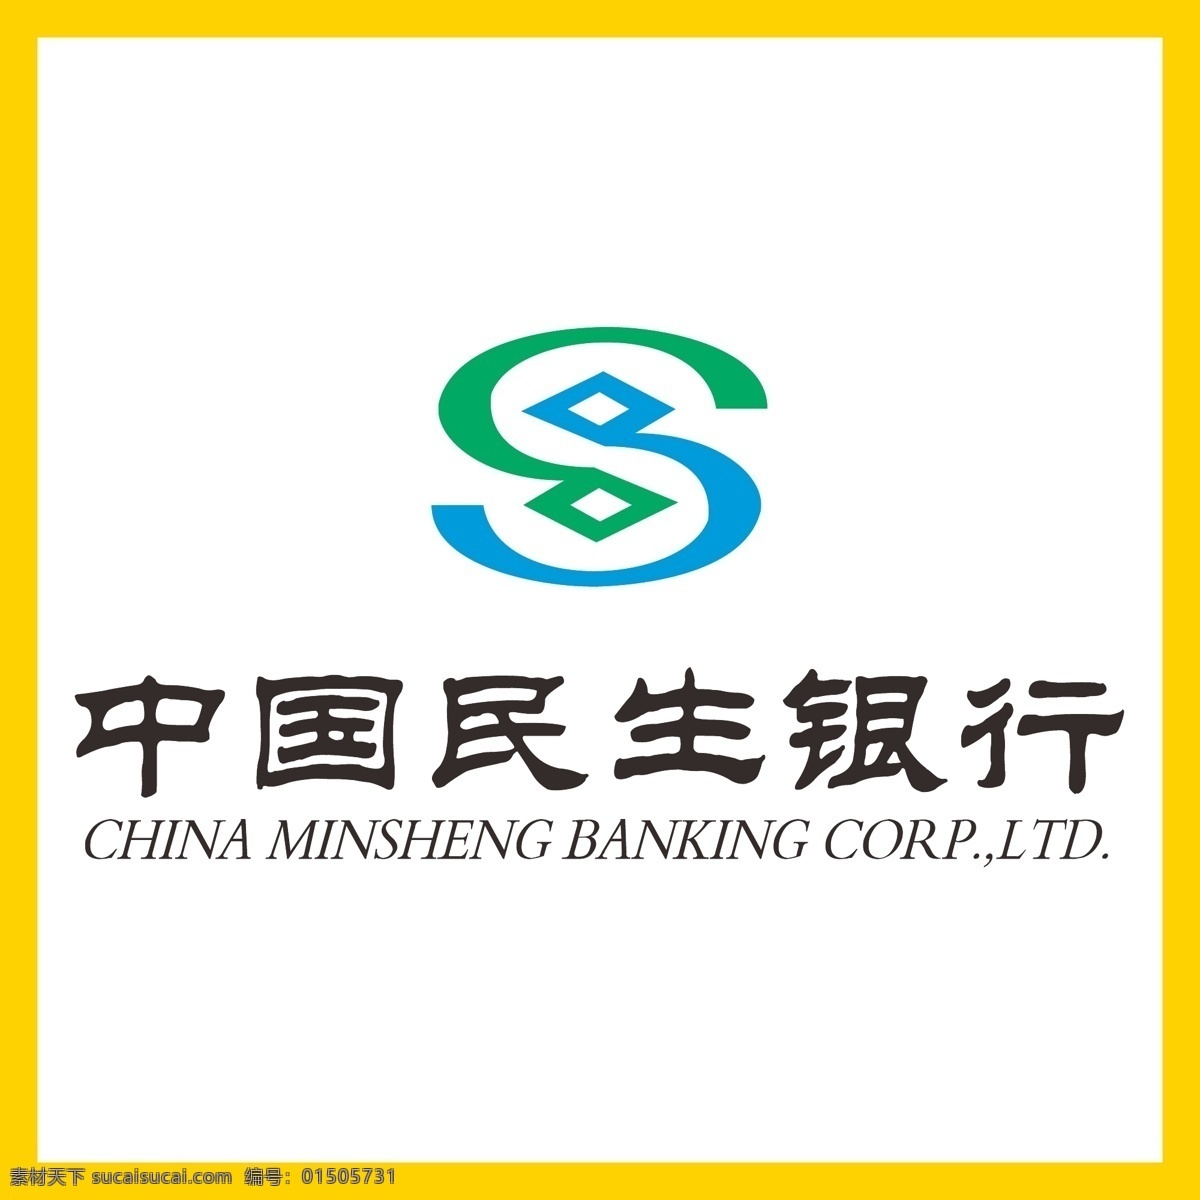 中国民生银行 民生银行 银行 信用卡 金融 投资理财 理财产品 贷款 国企 事业单位 logo 标志 矢量 vi logo设计